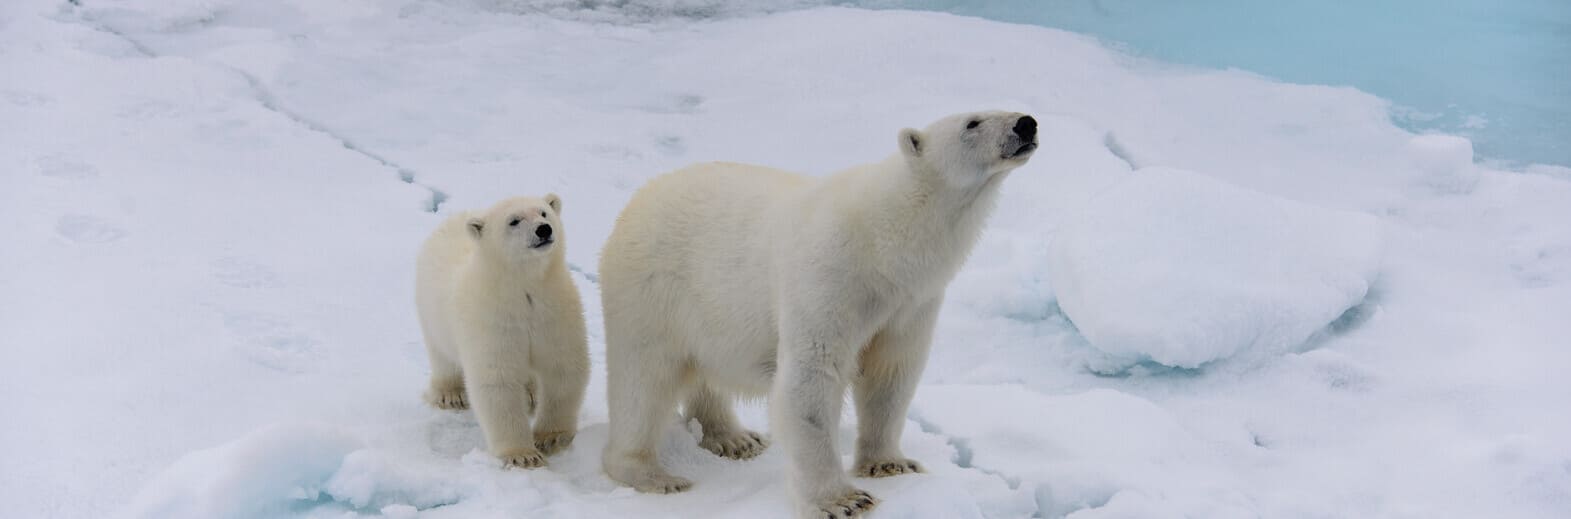 天堂島嶼羅浮敦、北緯81度斯瓦巴群島19日<br>
北極熊的家、海象、海豹、北極狐、鯨魚